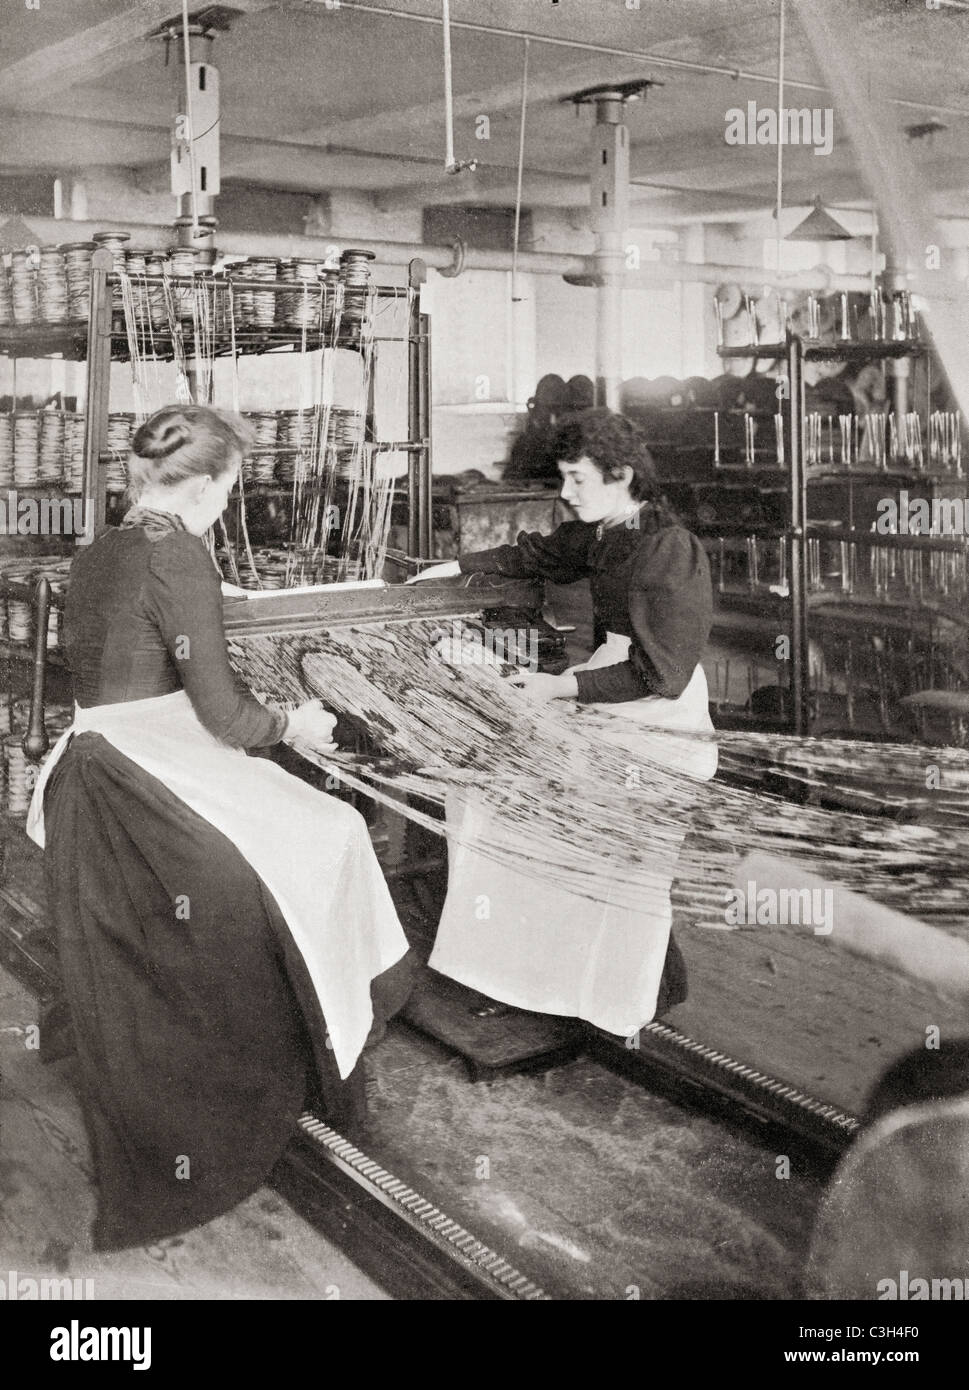 Le tissage des tapis Crossley travaille, Halifax, Yorkshire, Angleterre à la fin du xixe siècle. Banque D'Images